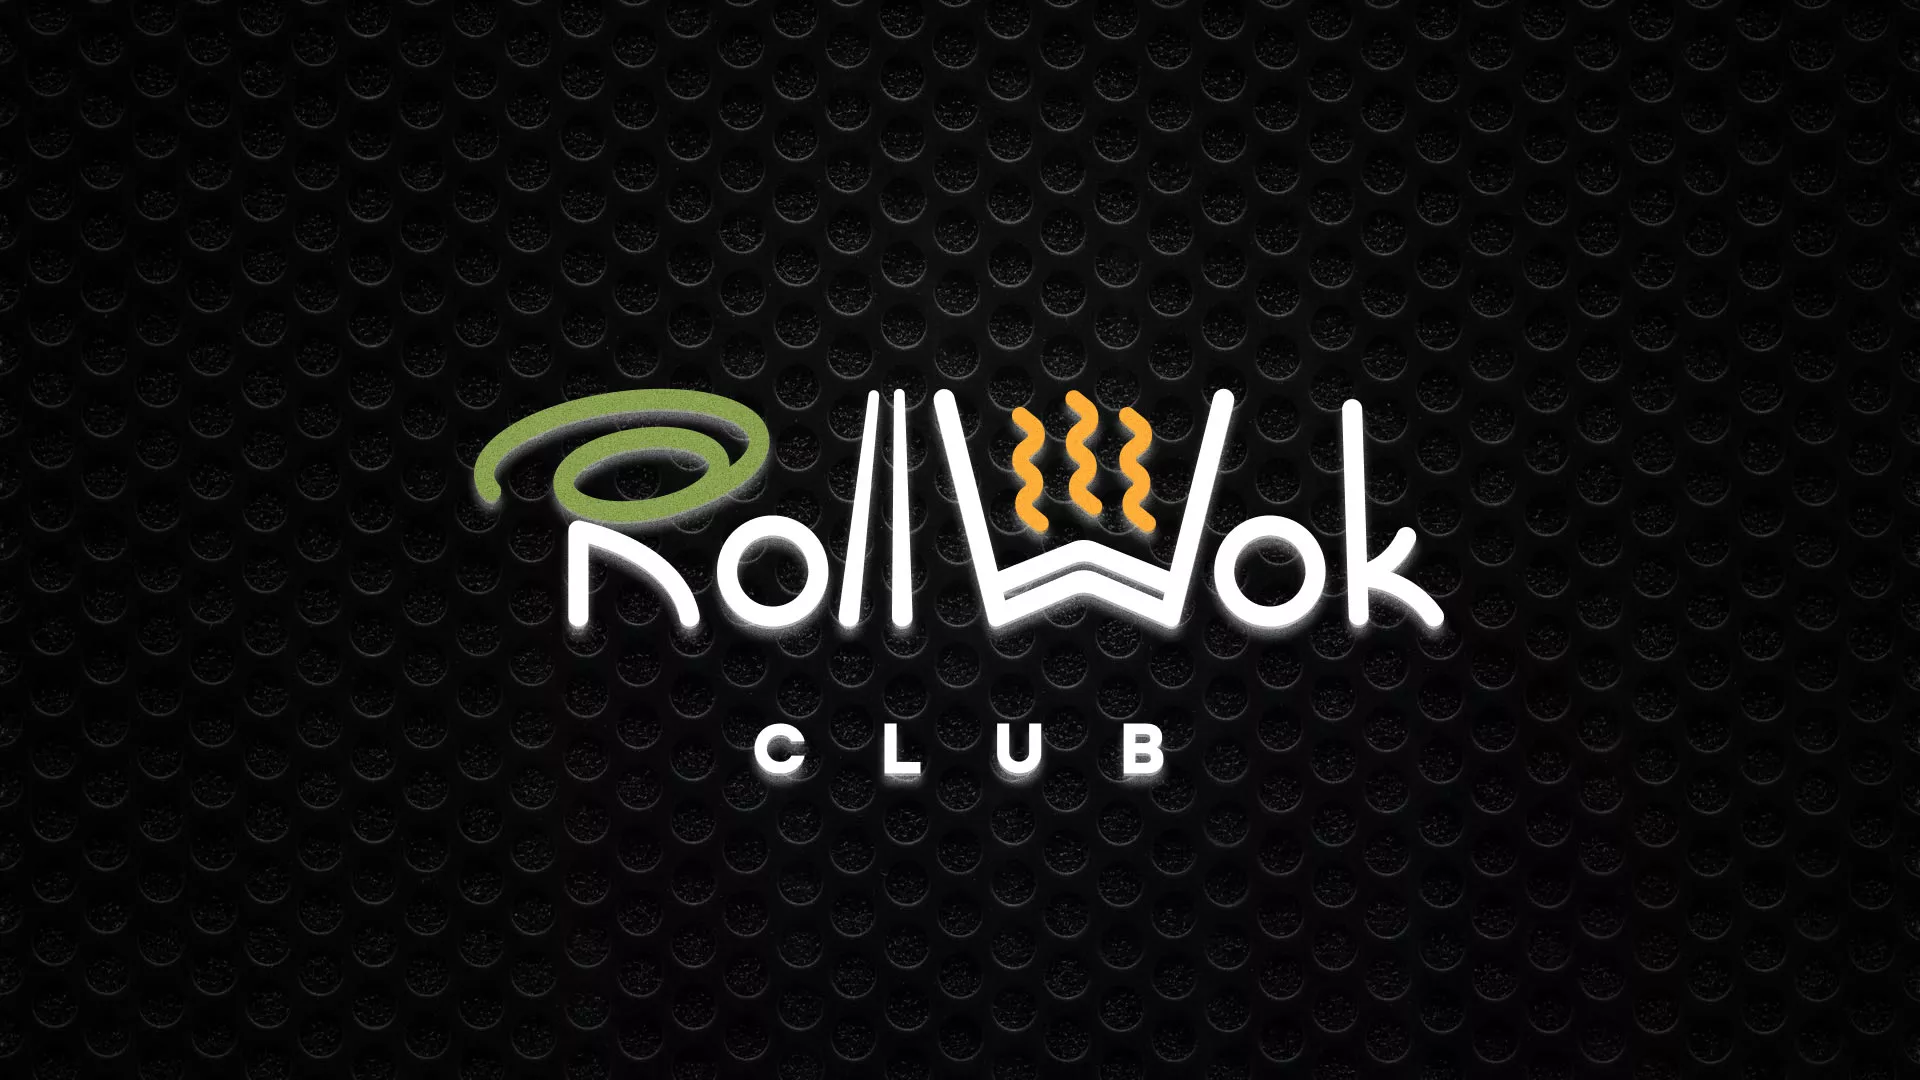 Брендирование торговых точек суши-бара «Roll Wok Club» в Устюжне